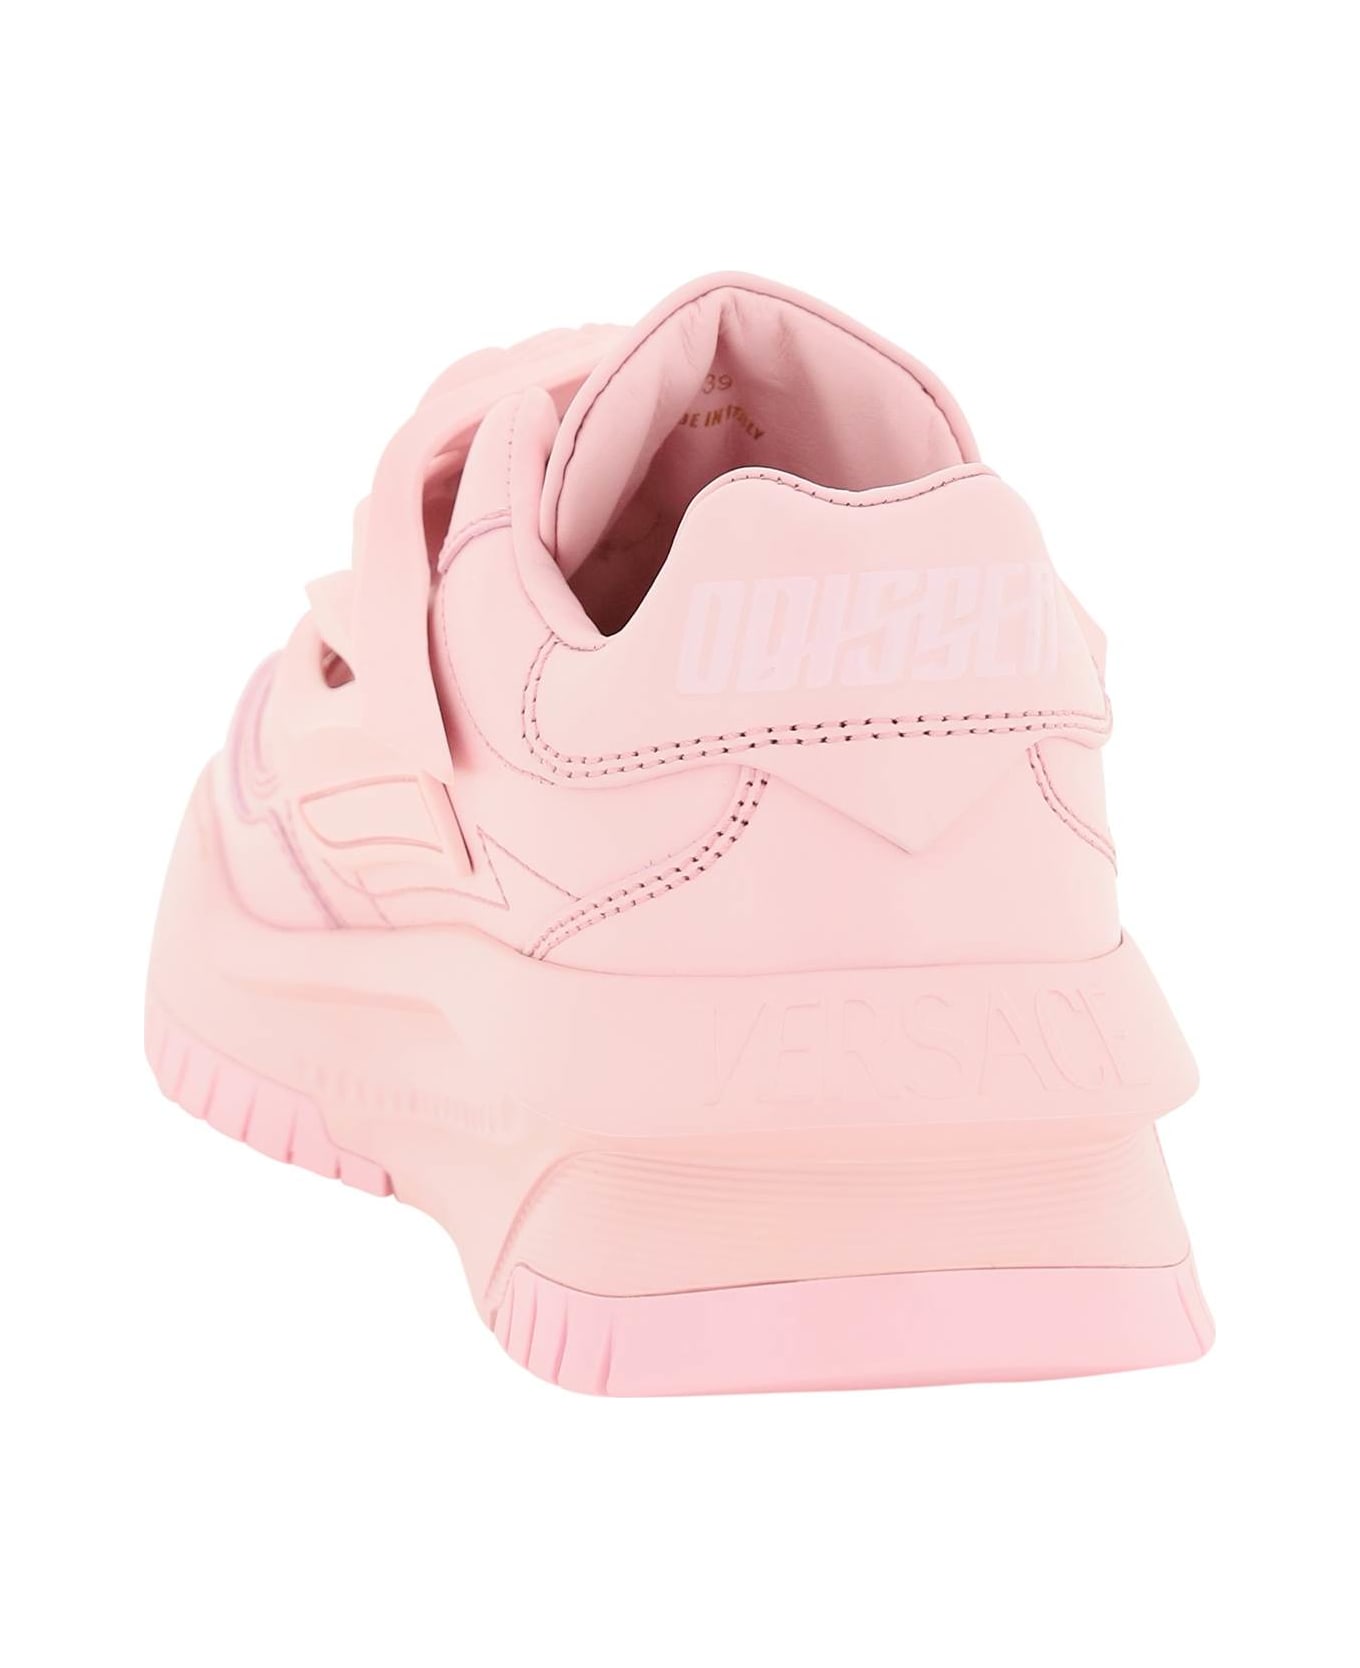 Versace Odissea Sneakers - ROSE (Pink)